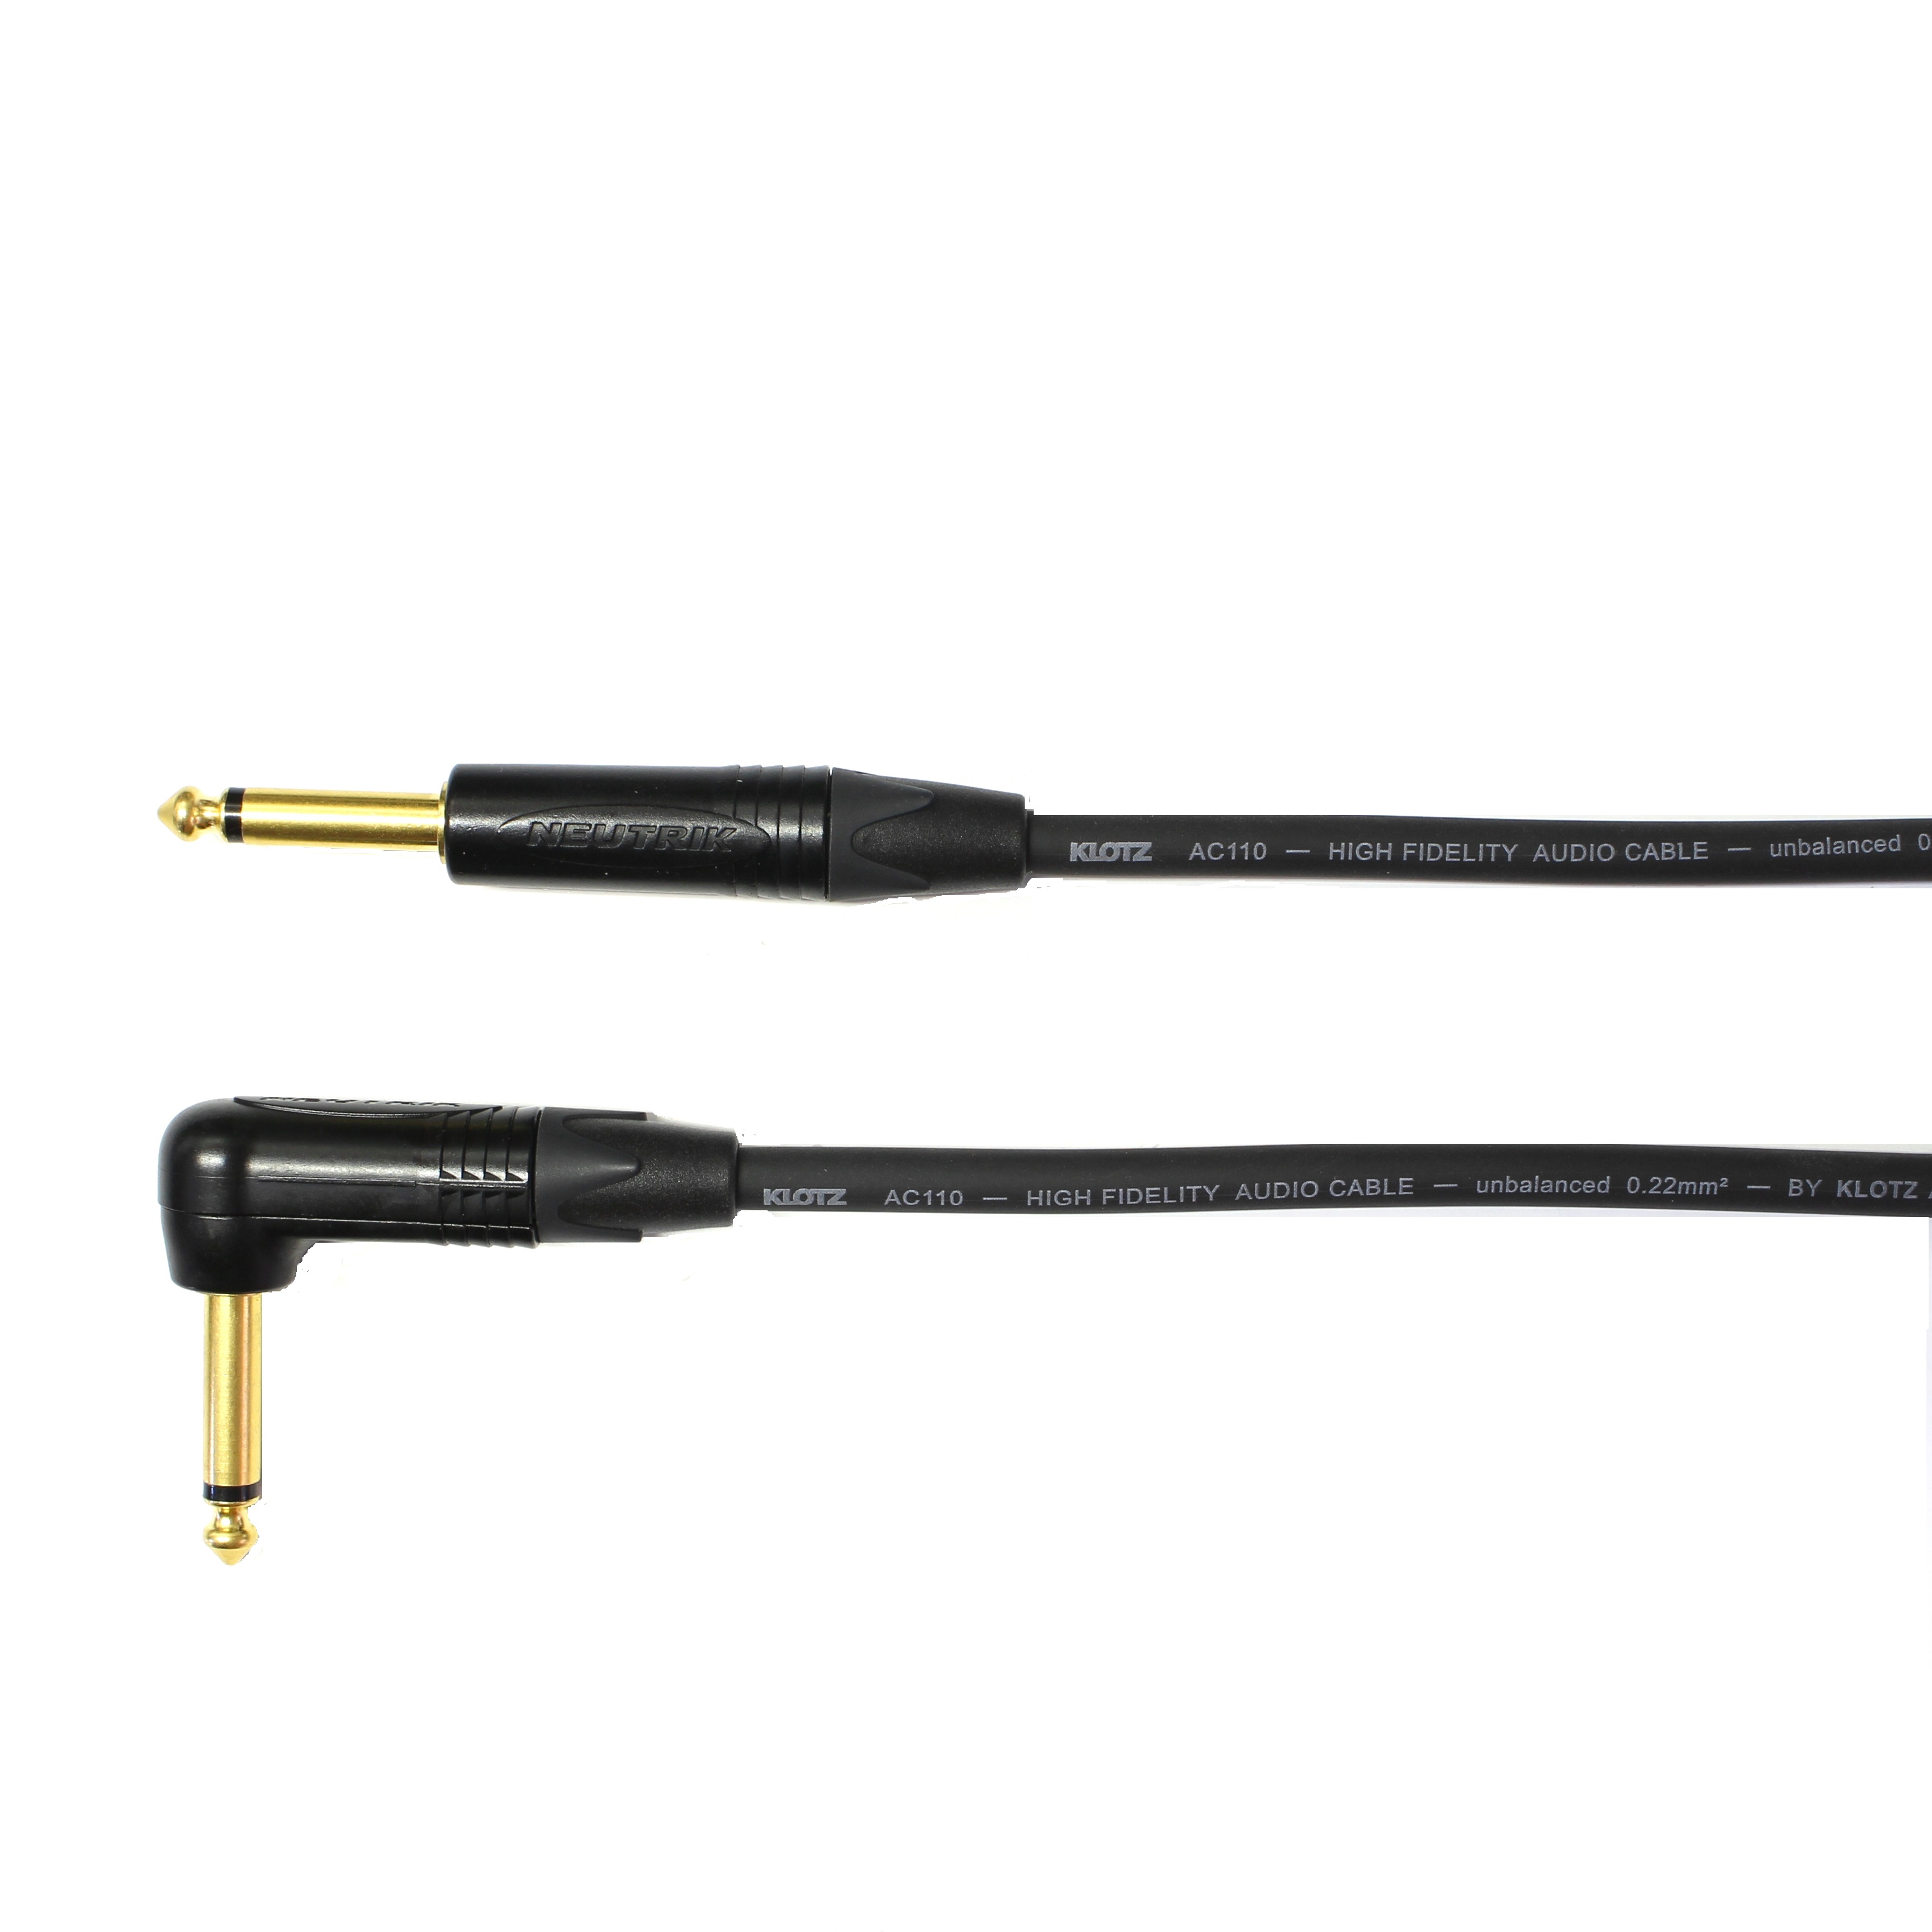 Kytarový kabel Jack 6,3 mono přímý/ Jack 6,3 mono úhlový, 1 m, AC110